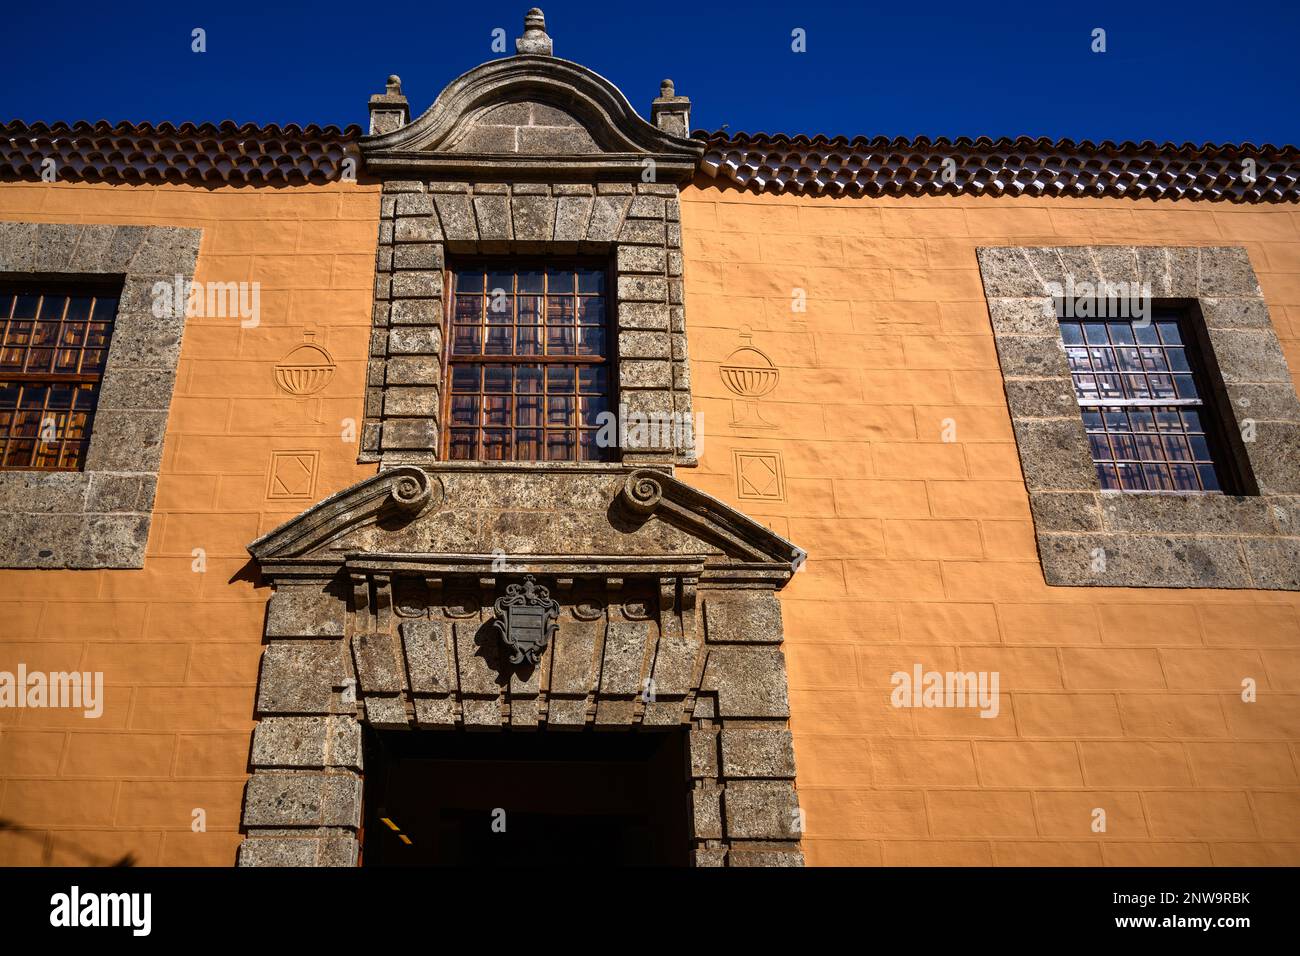 La façade vibrante et ornée du Palacio Lercaro dans la Calle Agustin, la Laguna. Le bâtiment historique abrite le Musée d'Histoire de Tenerife Banque D'Images